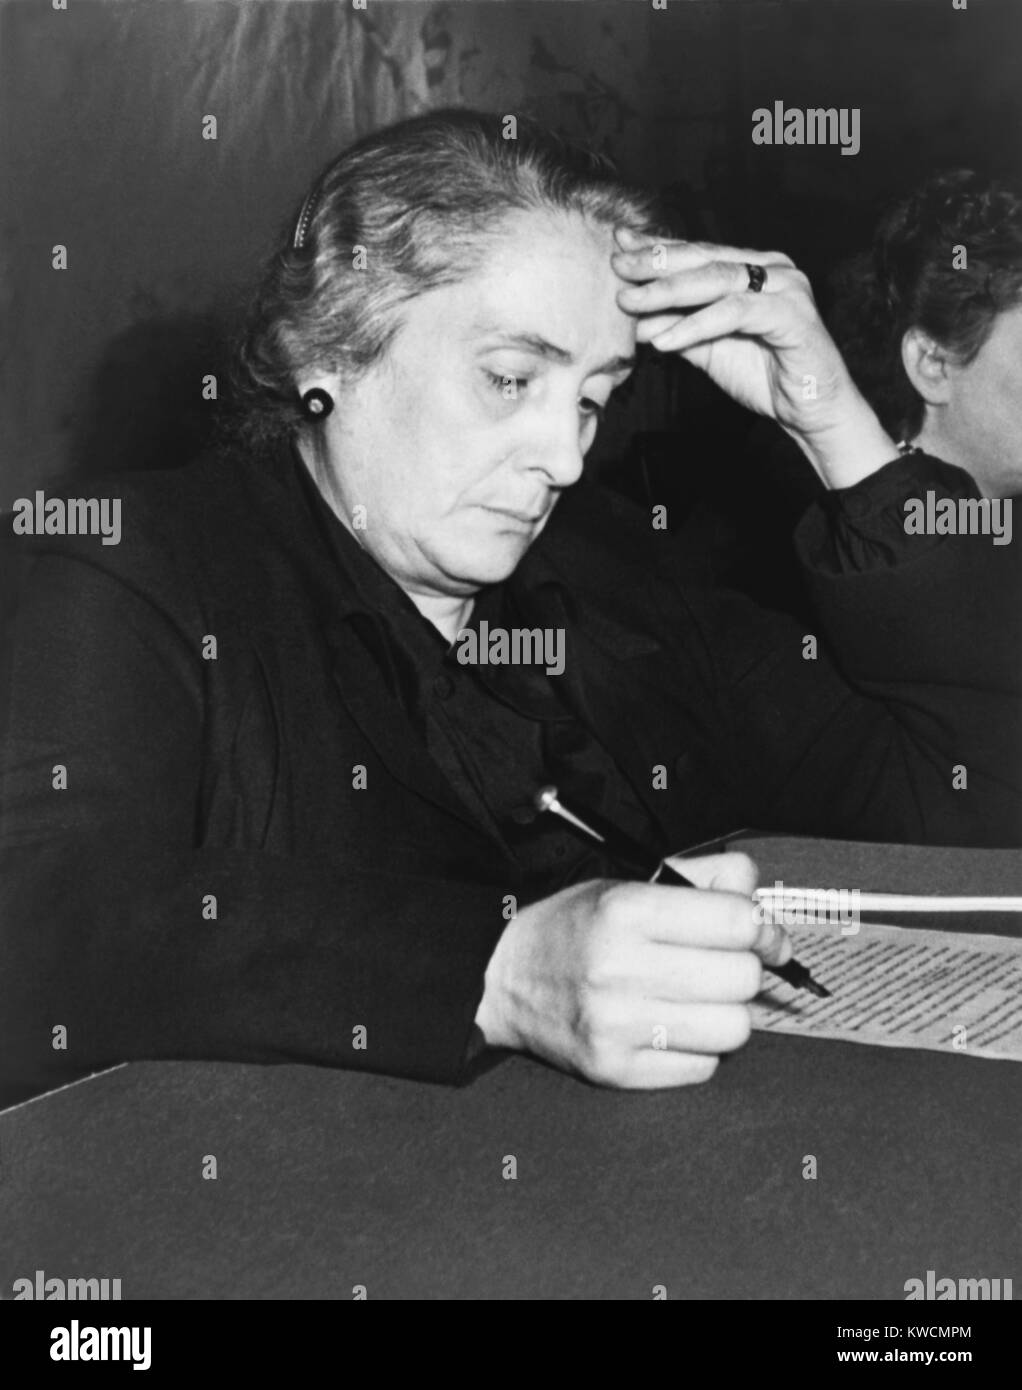 Dolores Ibarruri, au Congrès international des femmes à Paris, le 11 décembre 1945. Elle a été l'un des principaux Parti républicain pendant la guerre civile espagnole et un politicien communiste d'origine basque. Elle vient de rentrer de l'Union soviétique où elle a vécu pendant la Seconde Guerre mondiale. - BSLOC  2014 (15 241) Banque D'Images